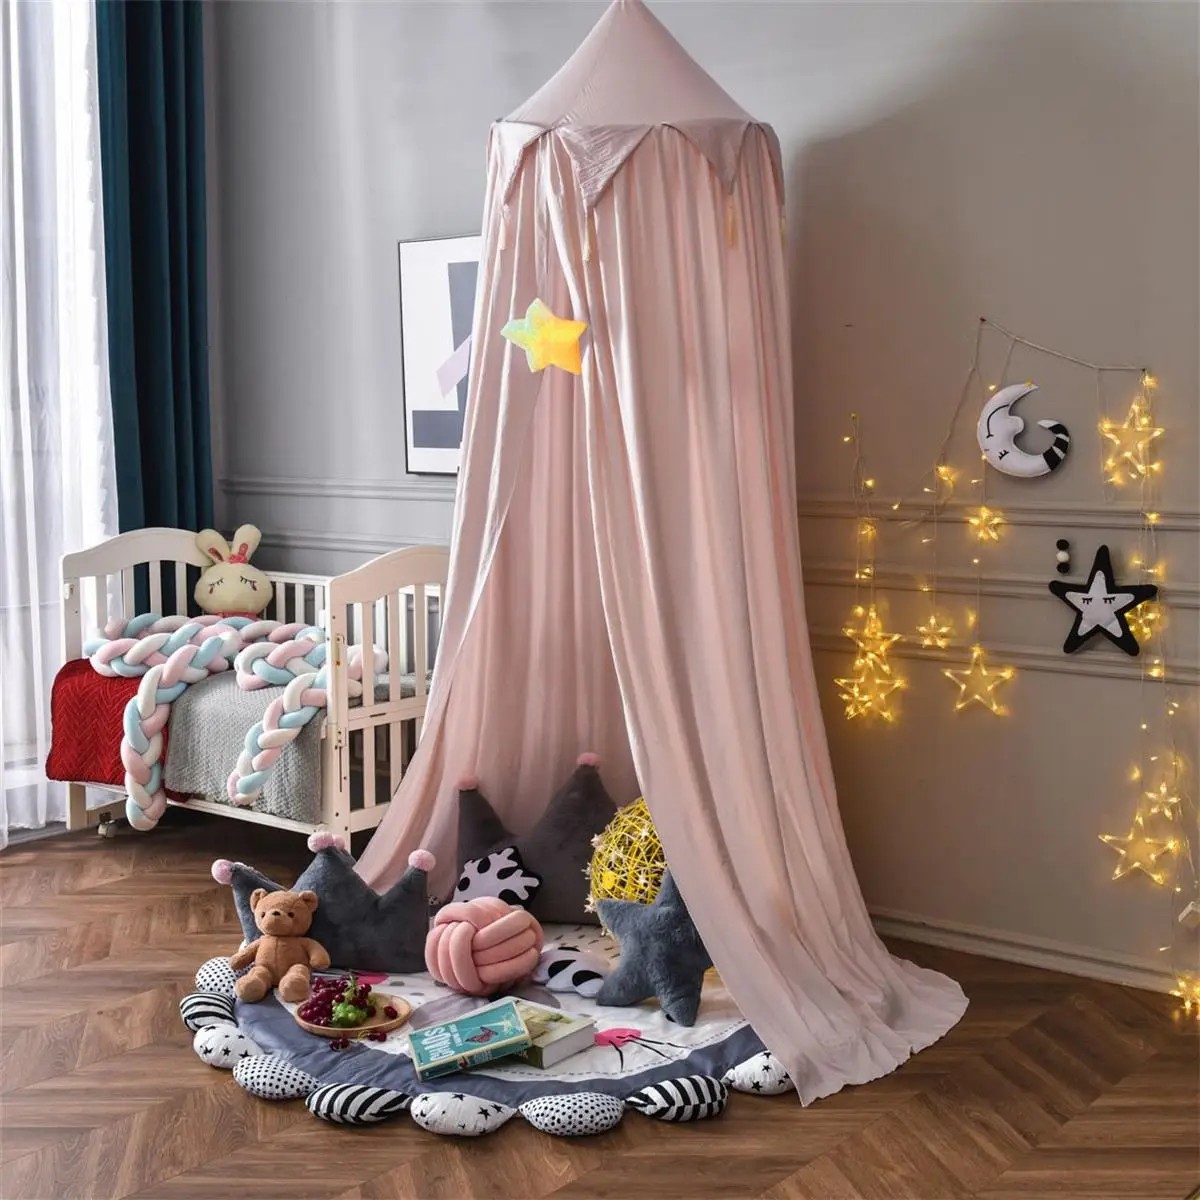 

Nordic детская игровая палатка-замок игровой домик для маленьких девочек для детской кроватки сетка для девочек и мальчиков Полог для дня рожд...